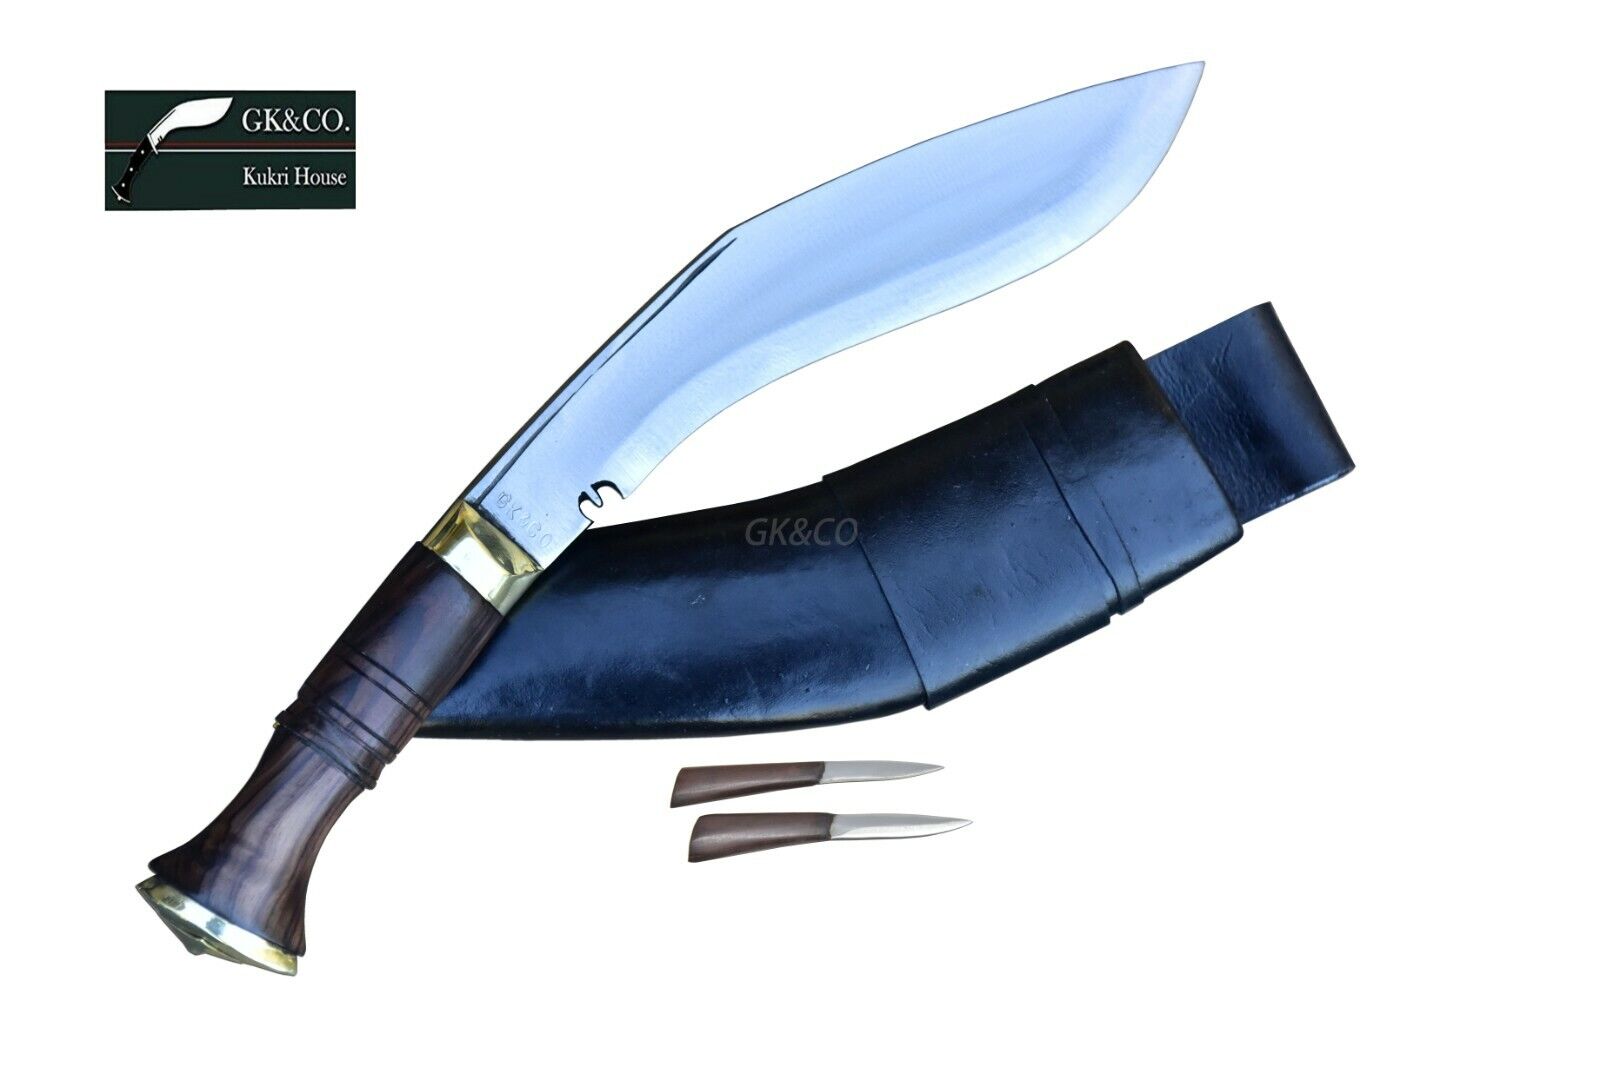 Genuine Gurkha knife -9\